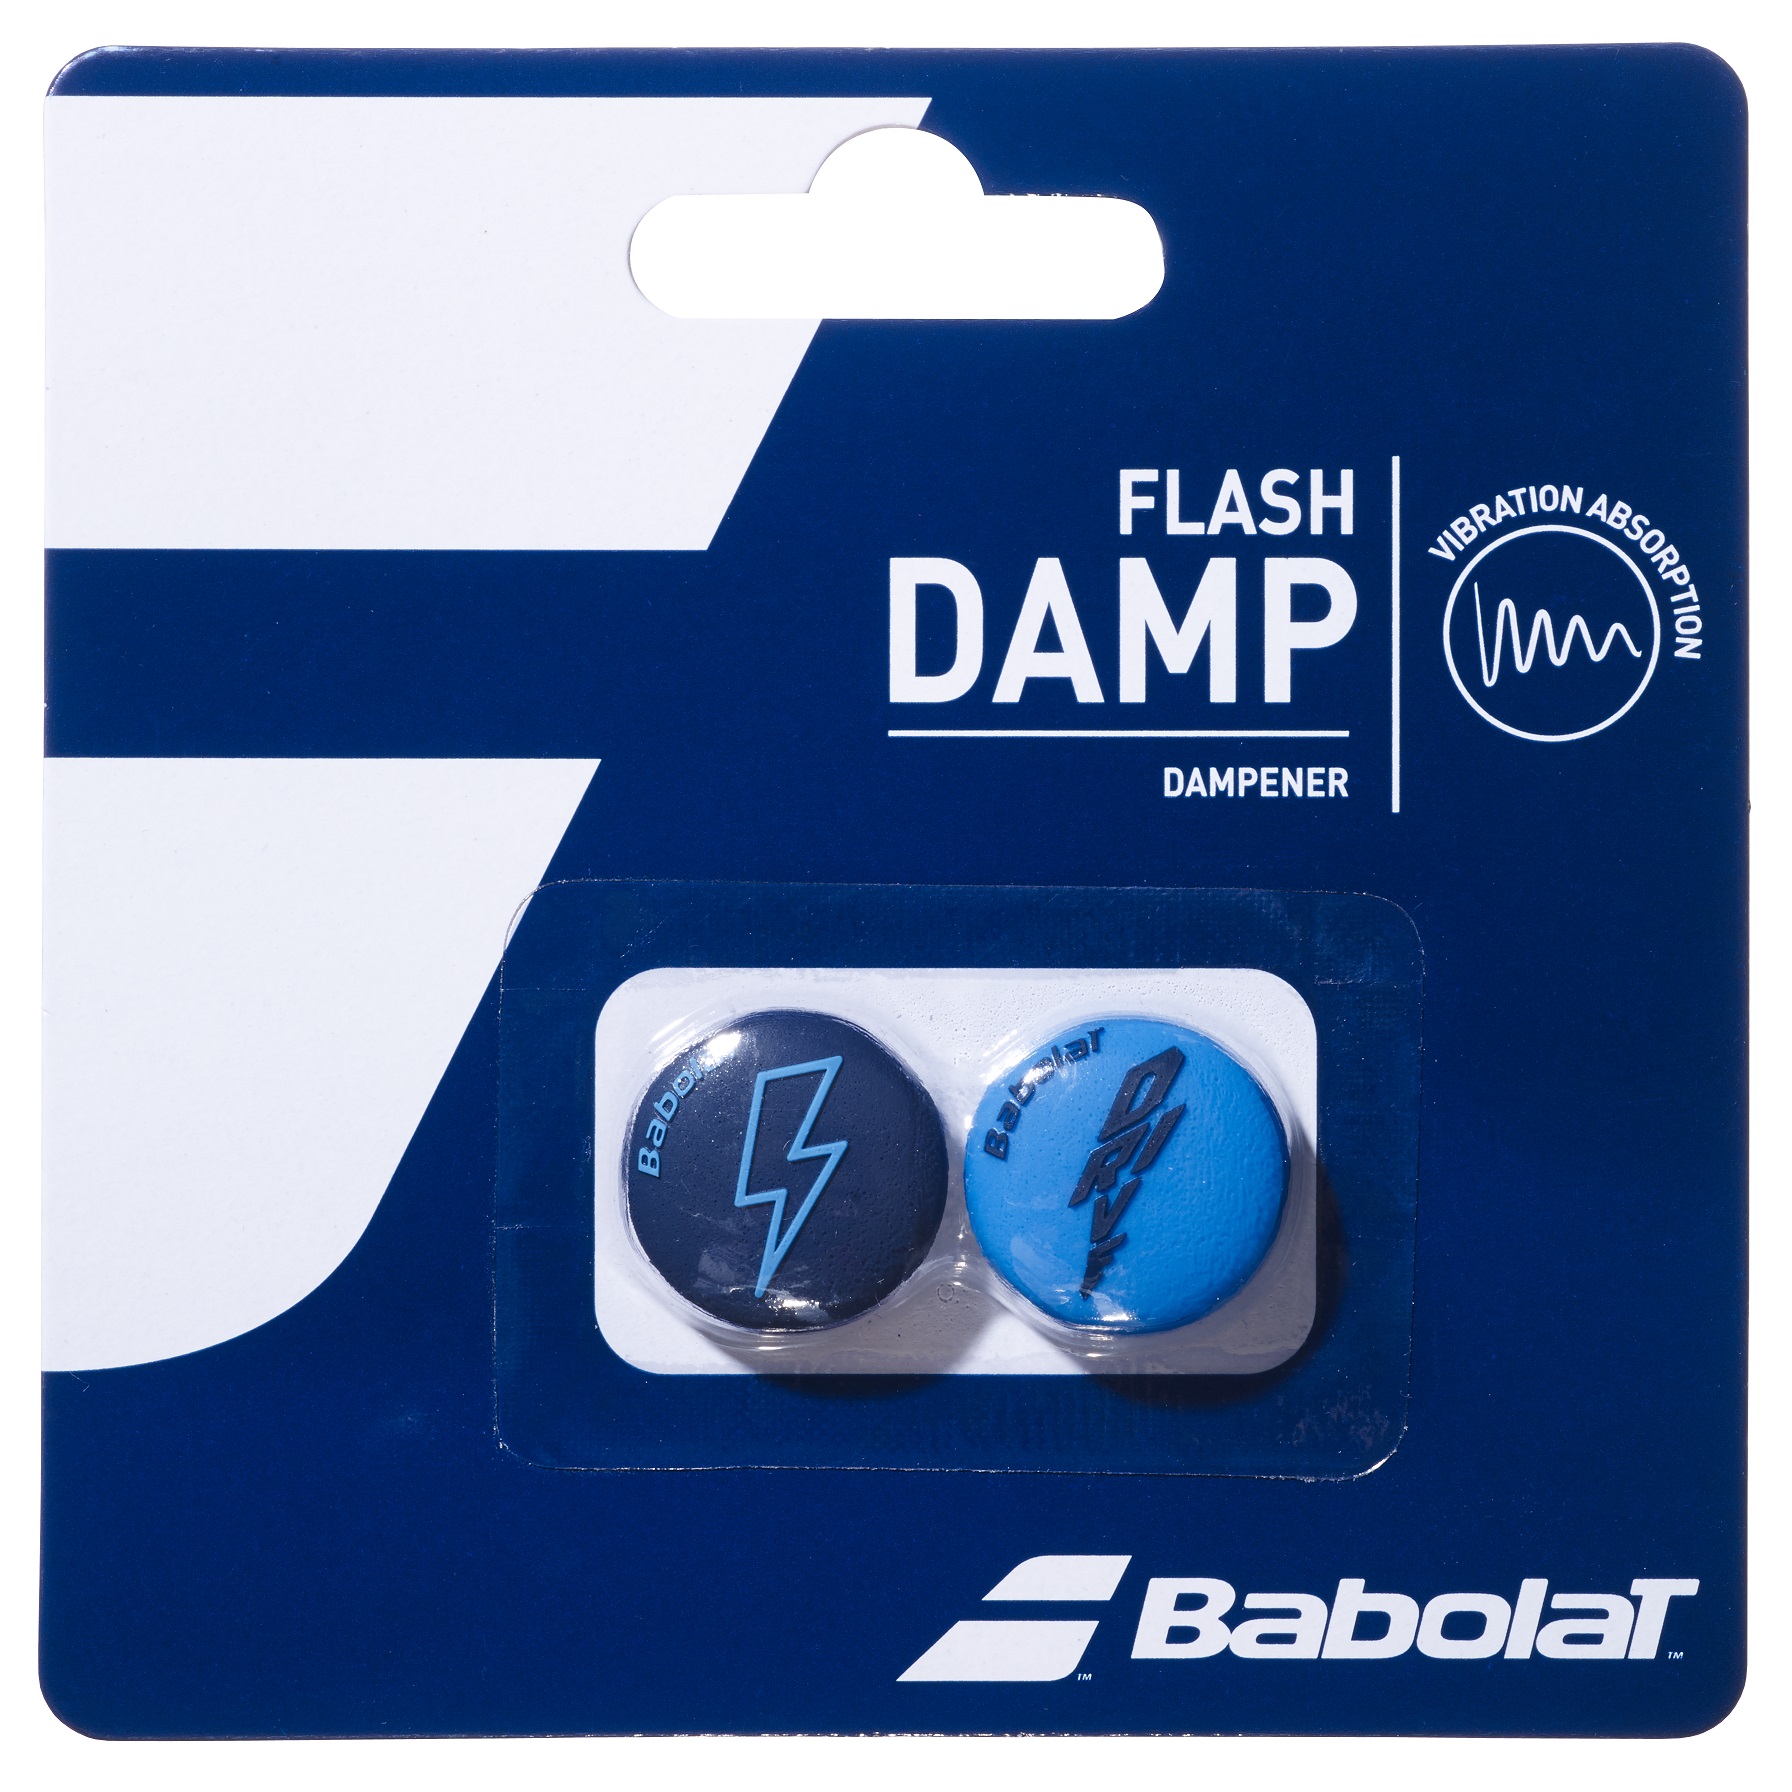 בולם זעזועים בבולט Flash Damp Drive Babolat